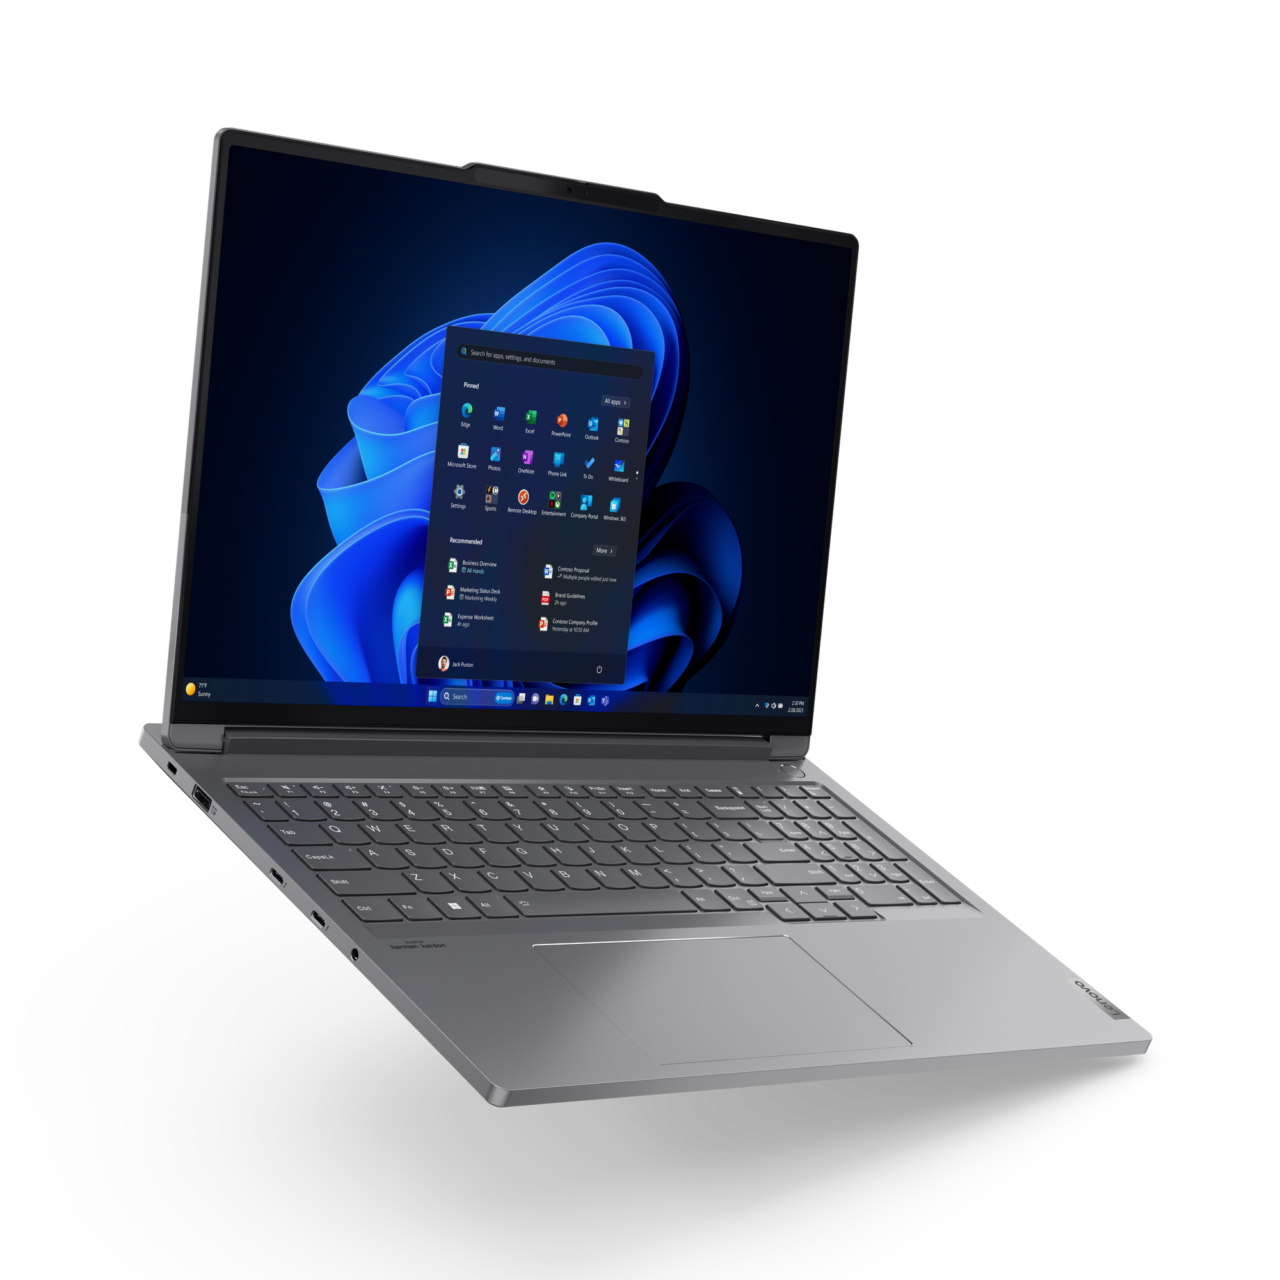 Otwarty, srebrny laptop z zalogowanym ekranem startowym systemu Windows na jednolitym tle.